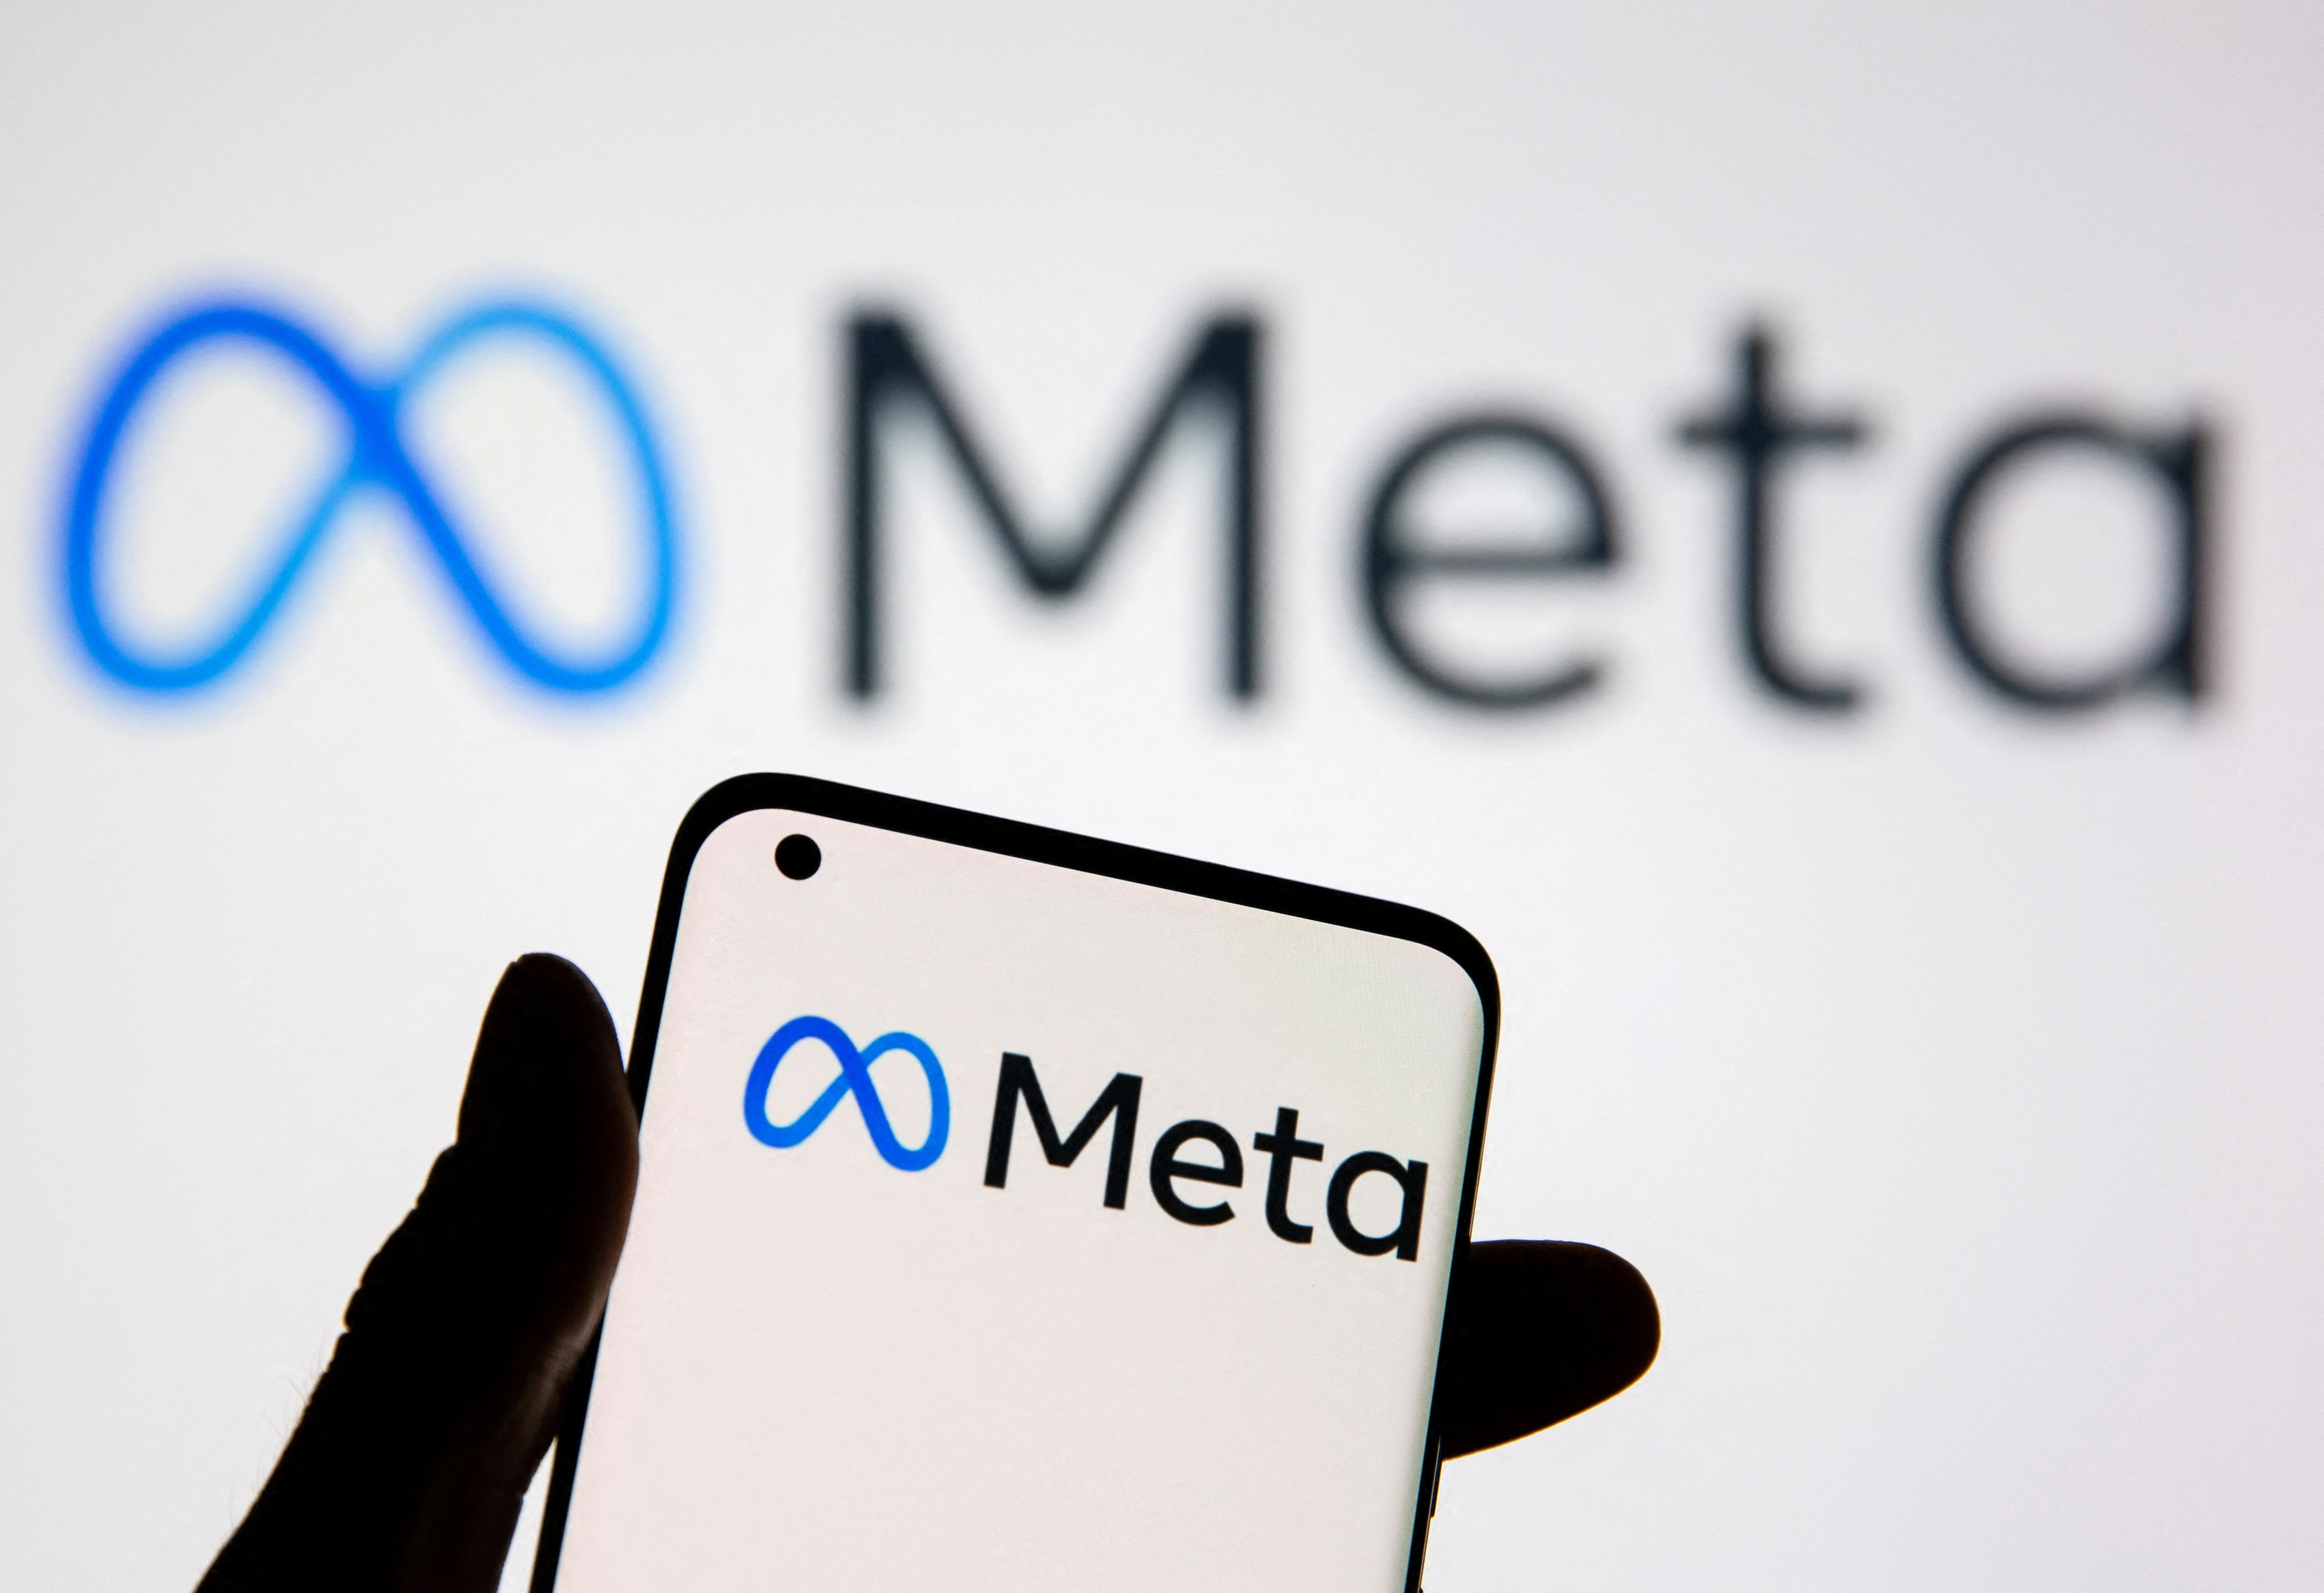 Un smartphone portant le logo Meta est vu devant le nouveau logo Meta de Facebook dans cette illustration.